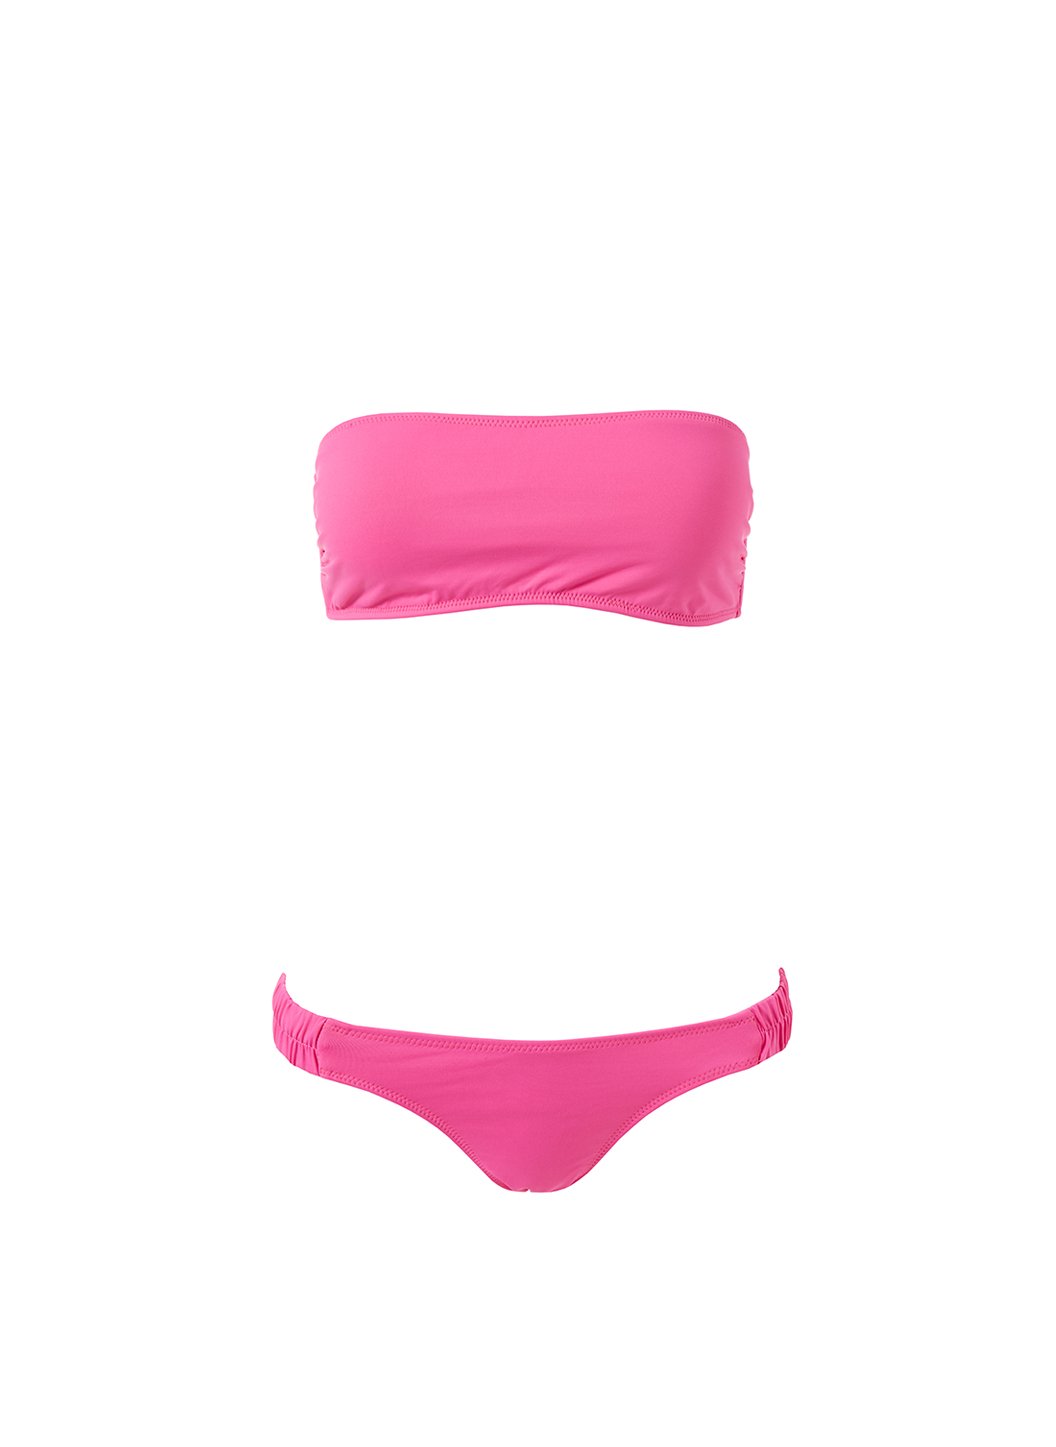 Melissa Odabash Trieste Hot Pink Ruched Bandeau Bikini | Official Website